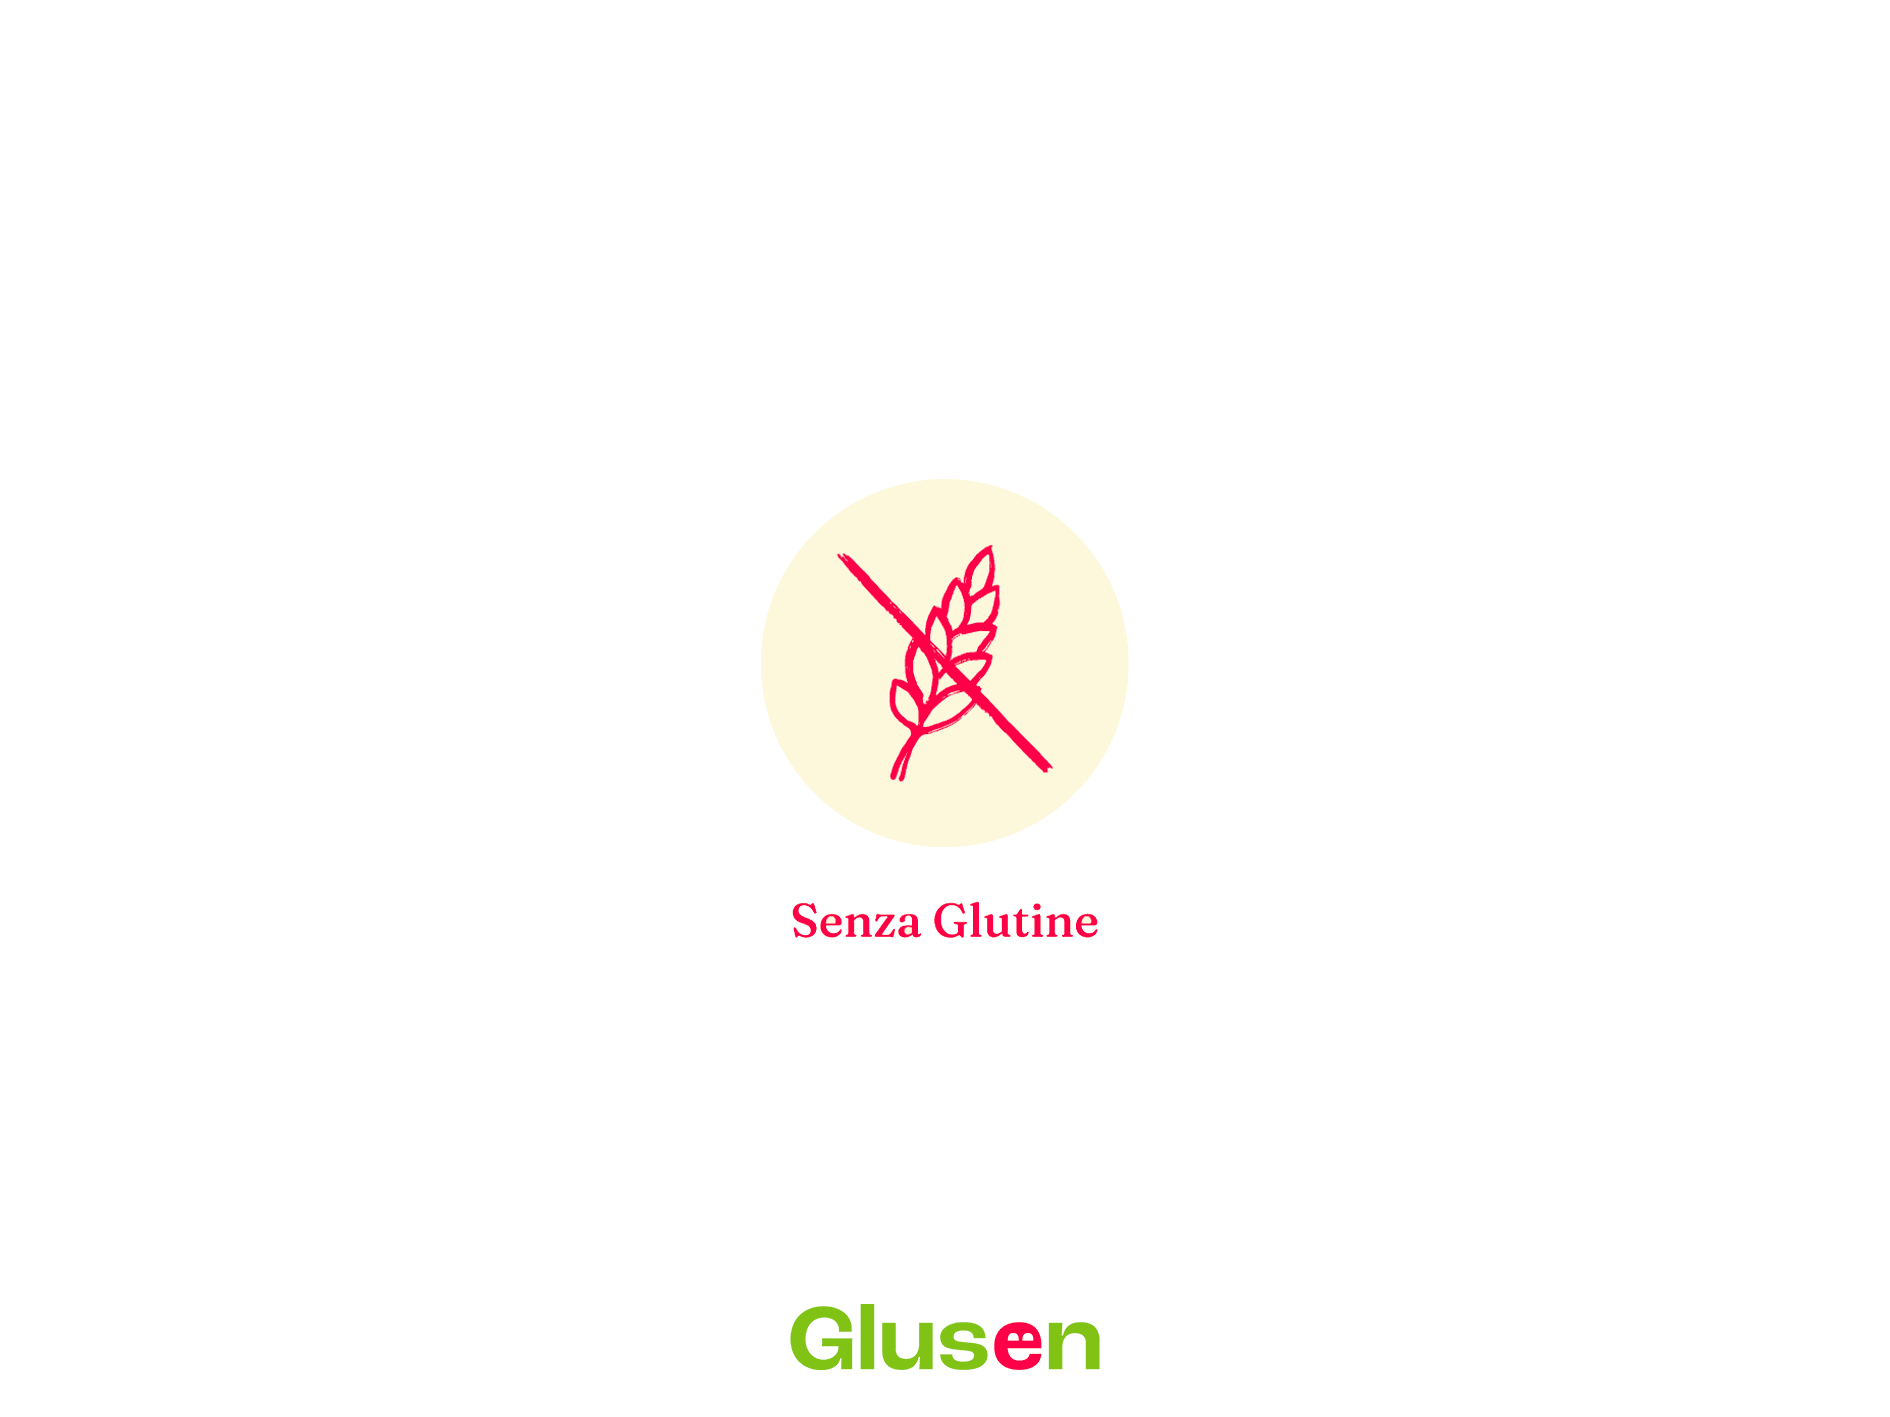 Linguine n 13 Senza Glutine - Glusen